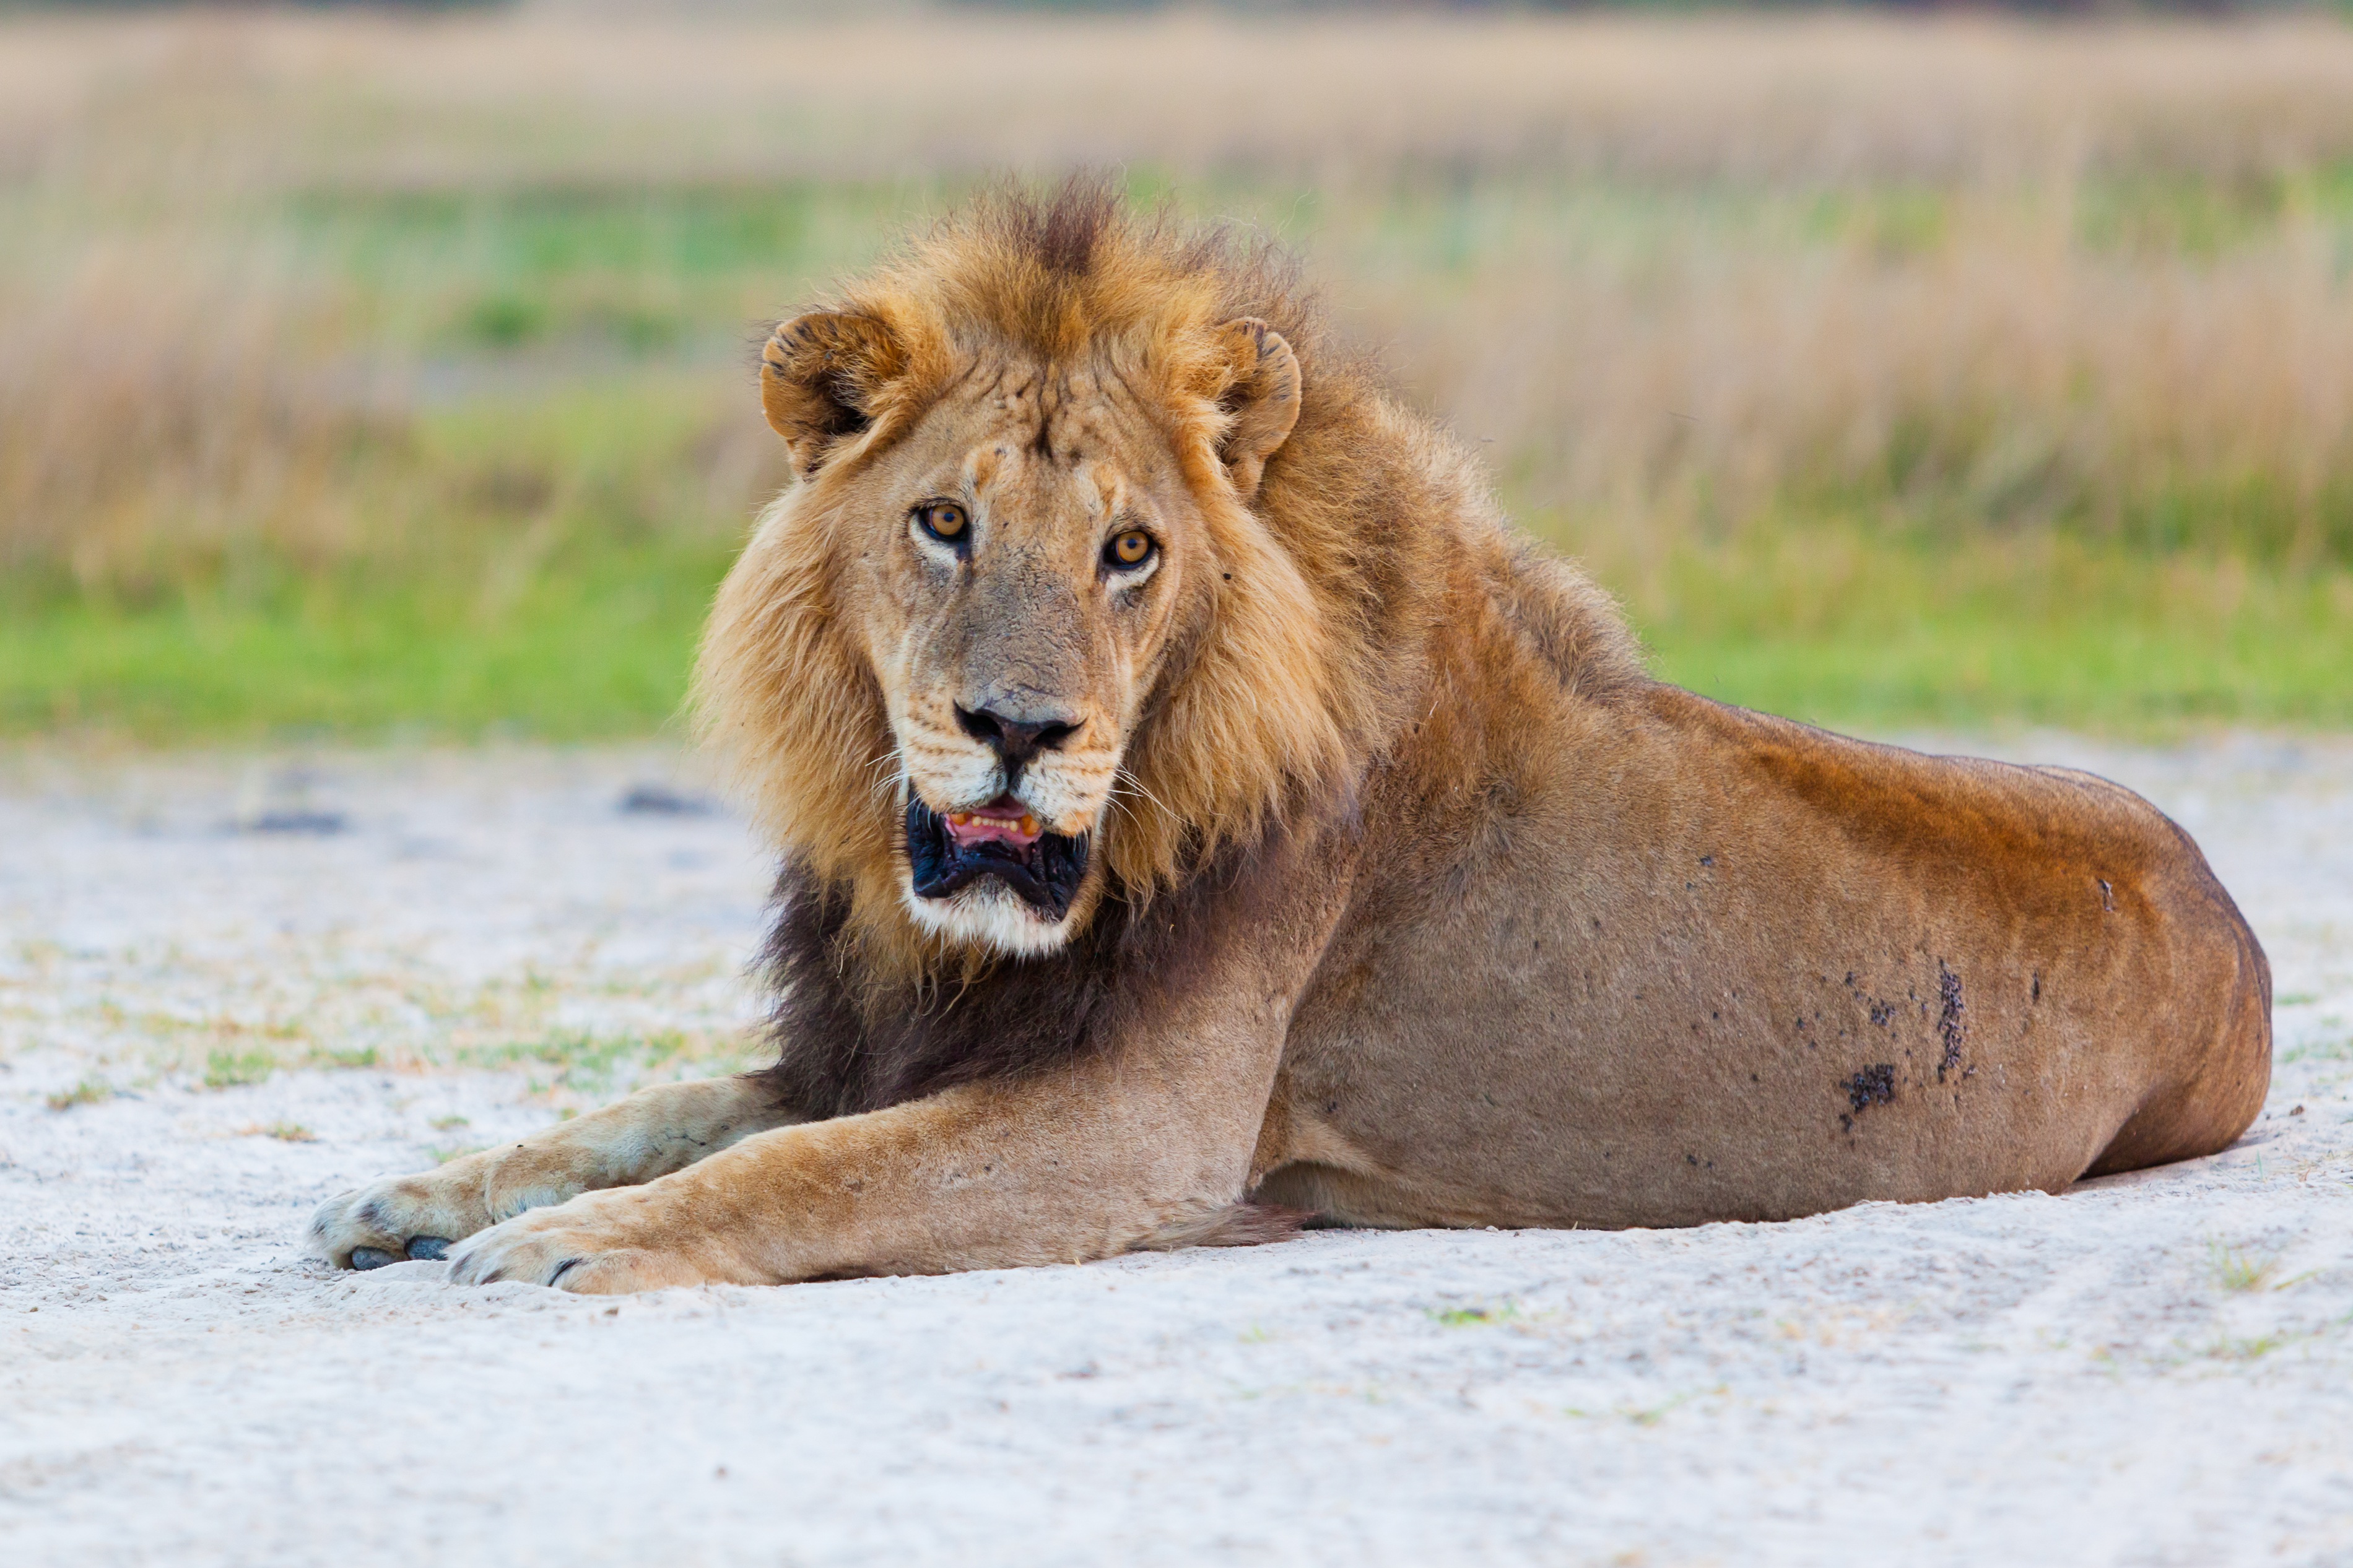 Bilder Löwen hinlegen Bokeh Blick Tiere 3800x2533 Löwe Liegt ruhen Liegen unscharfer Hintergrund Starren ein Tier